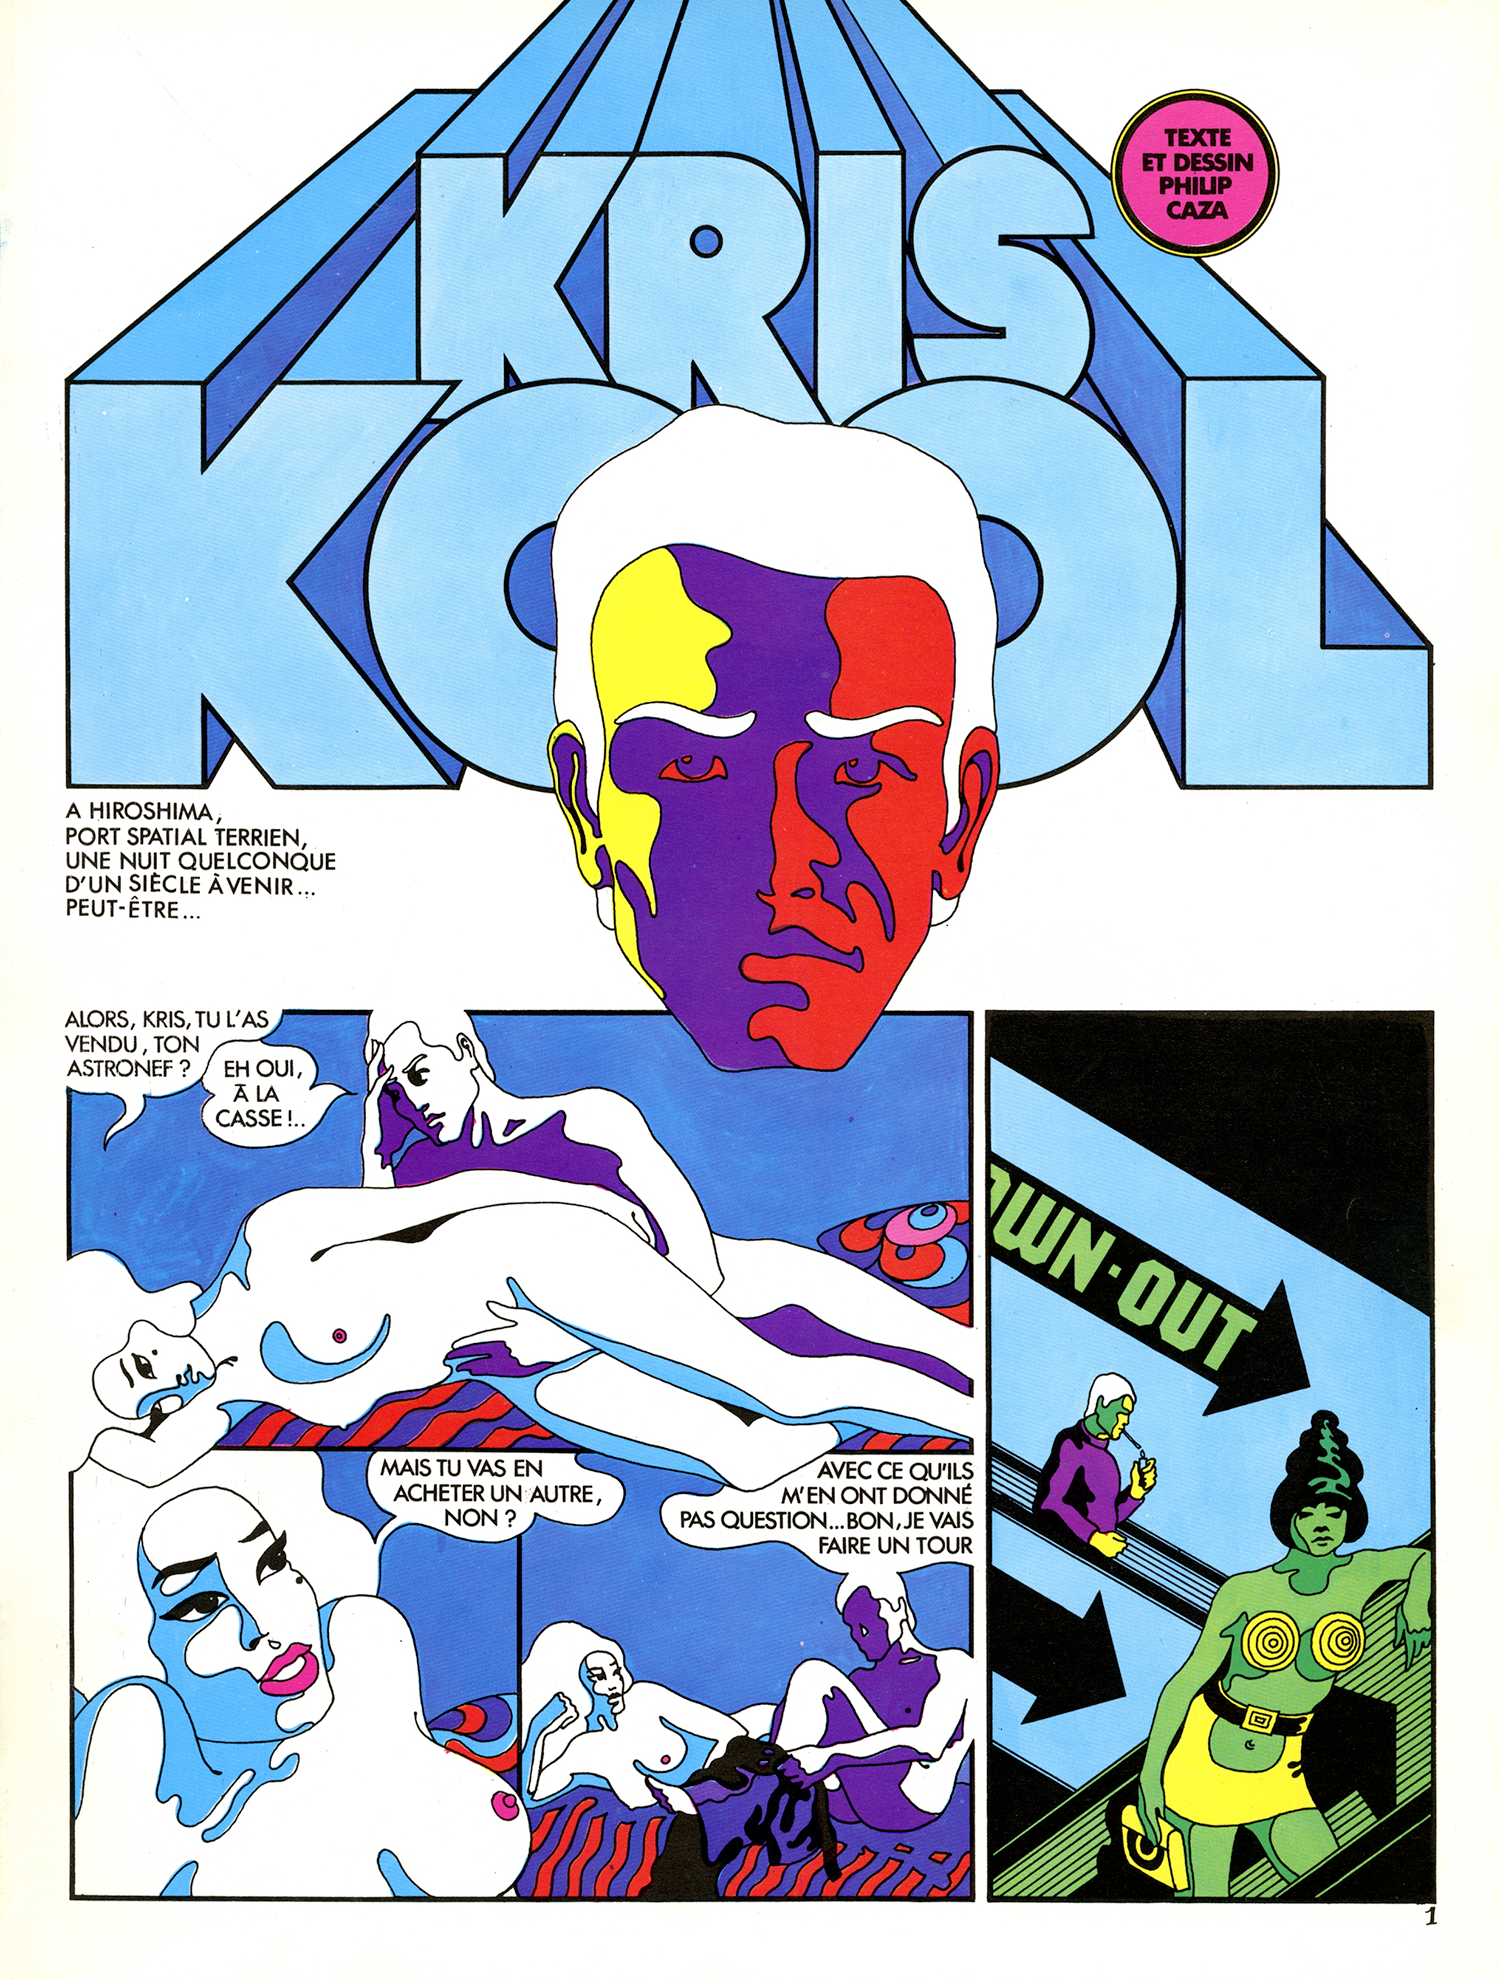 日本限定モデル】 1970年フランスのカルト漫画 Kris Cool by Philip